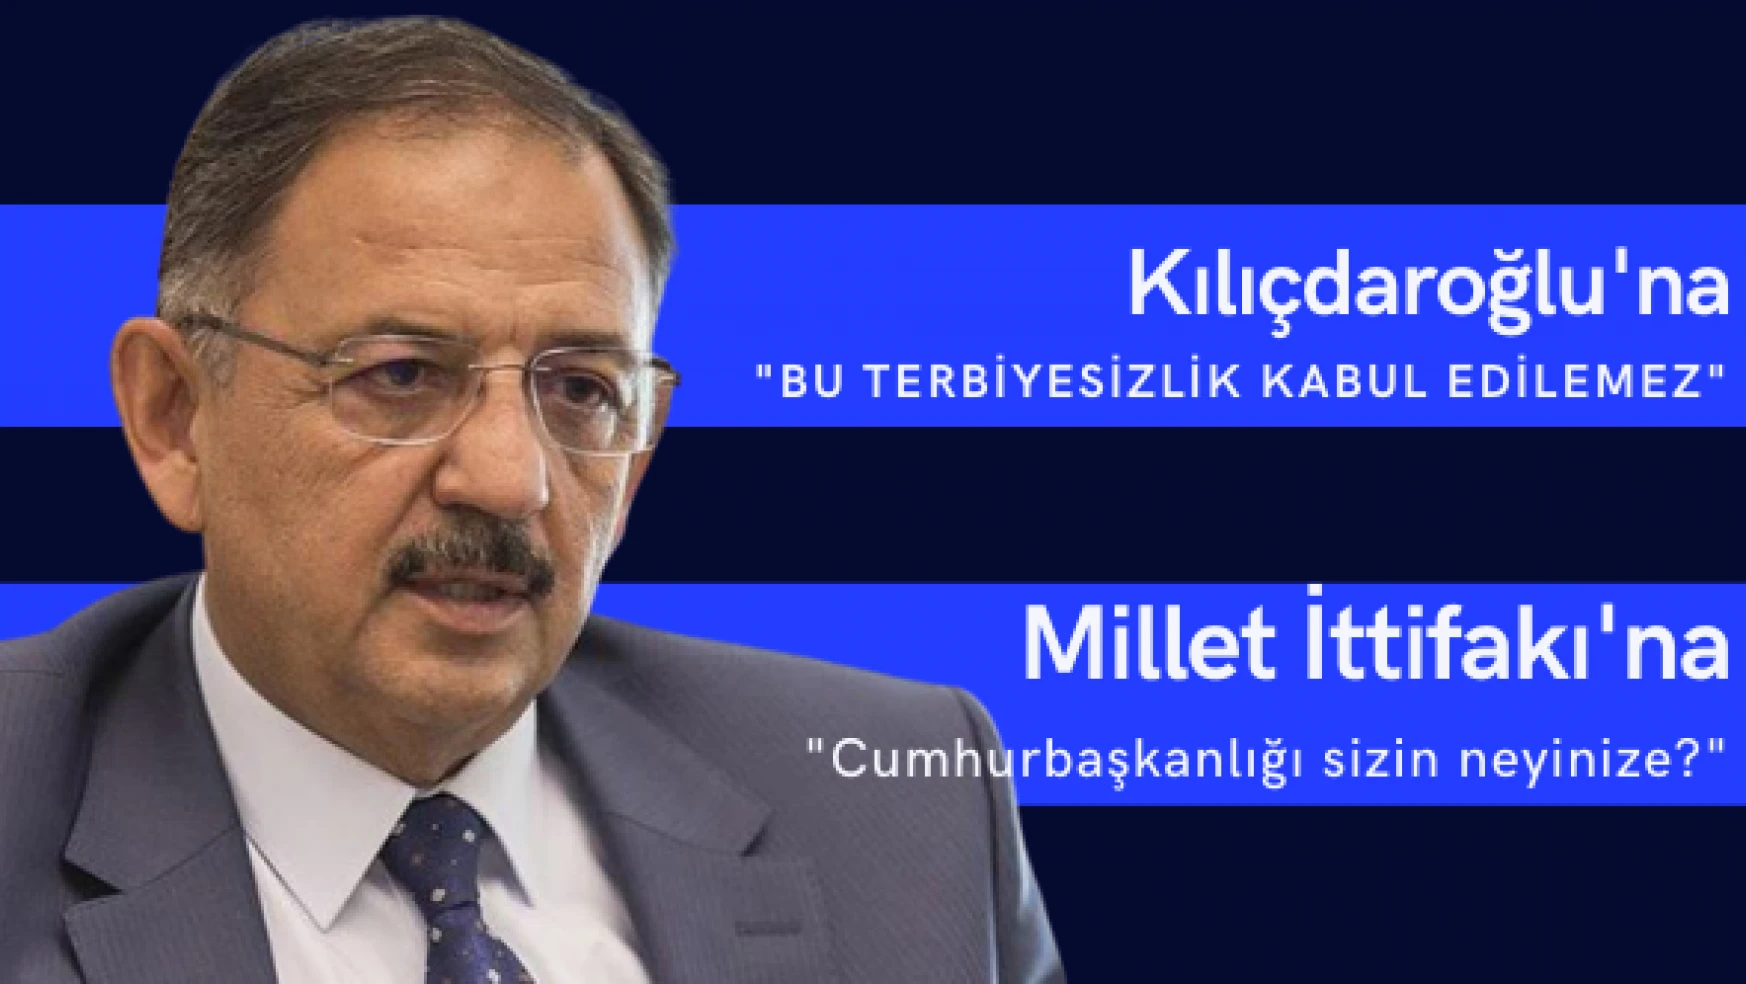 Özhaseki: 'Kılıçdaroğlu'nun terbiyesiz hareketi kabul edilemez'